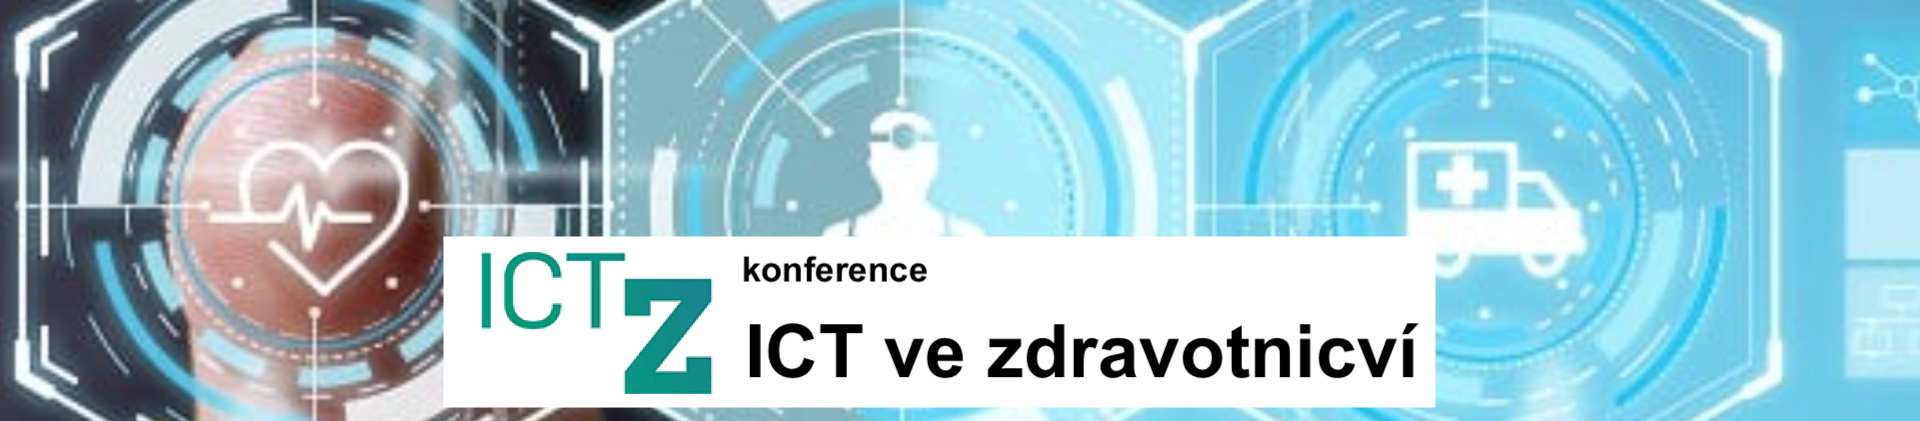 Jsme partnerem konference ICT ve zdravotnictví